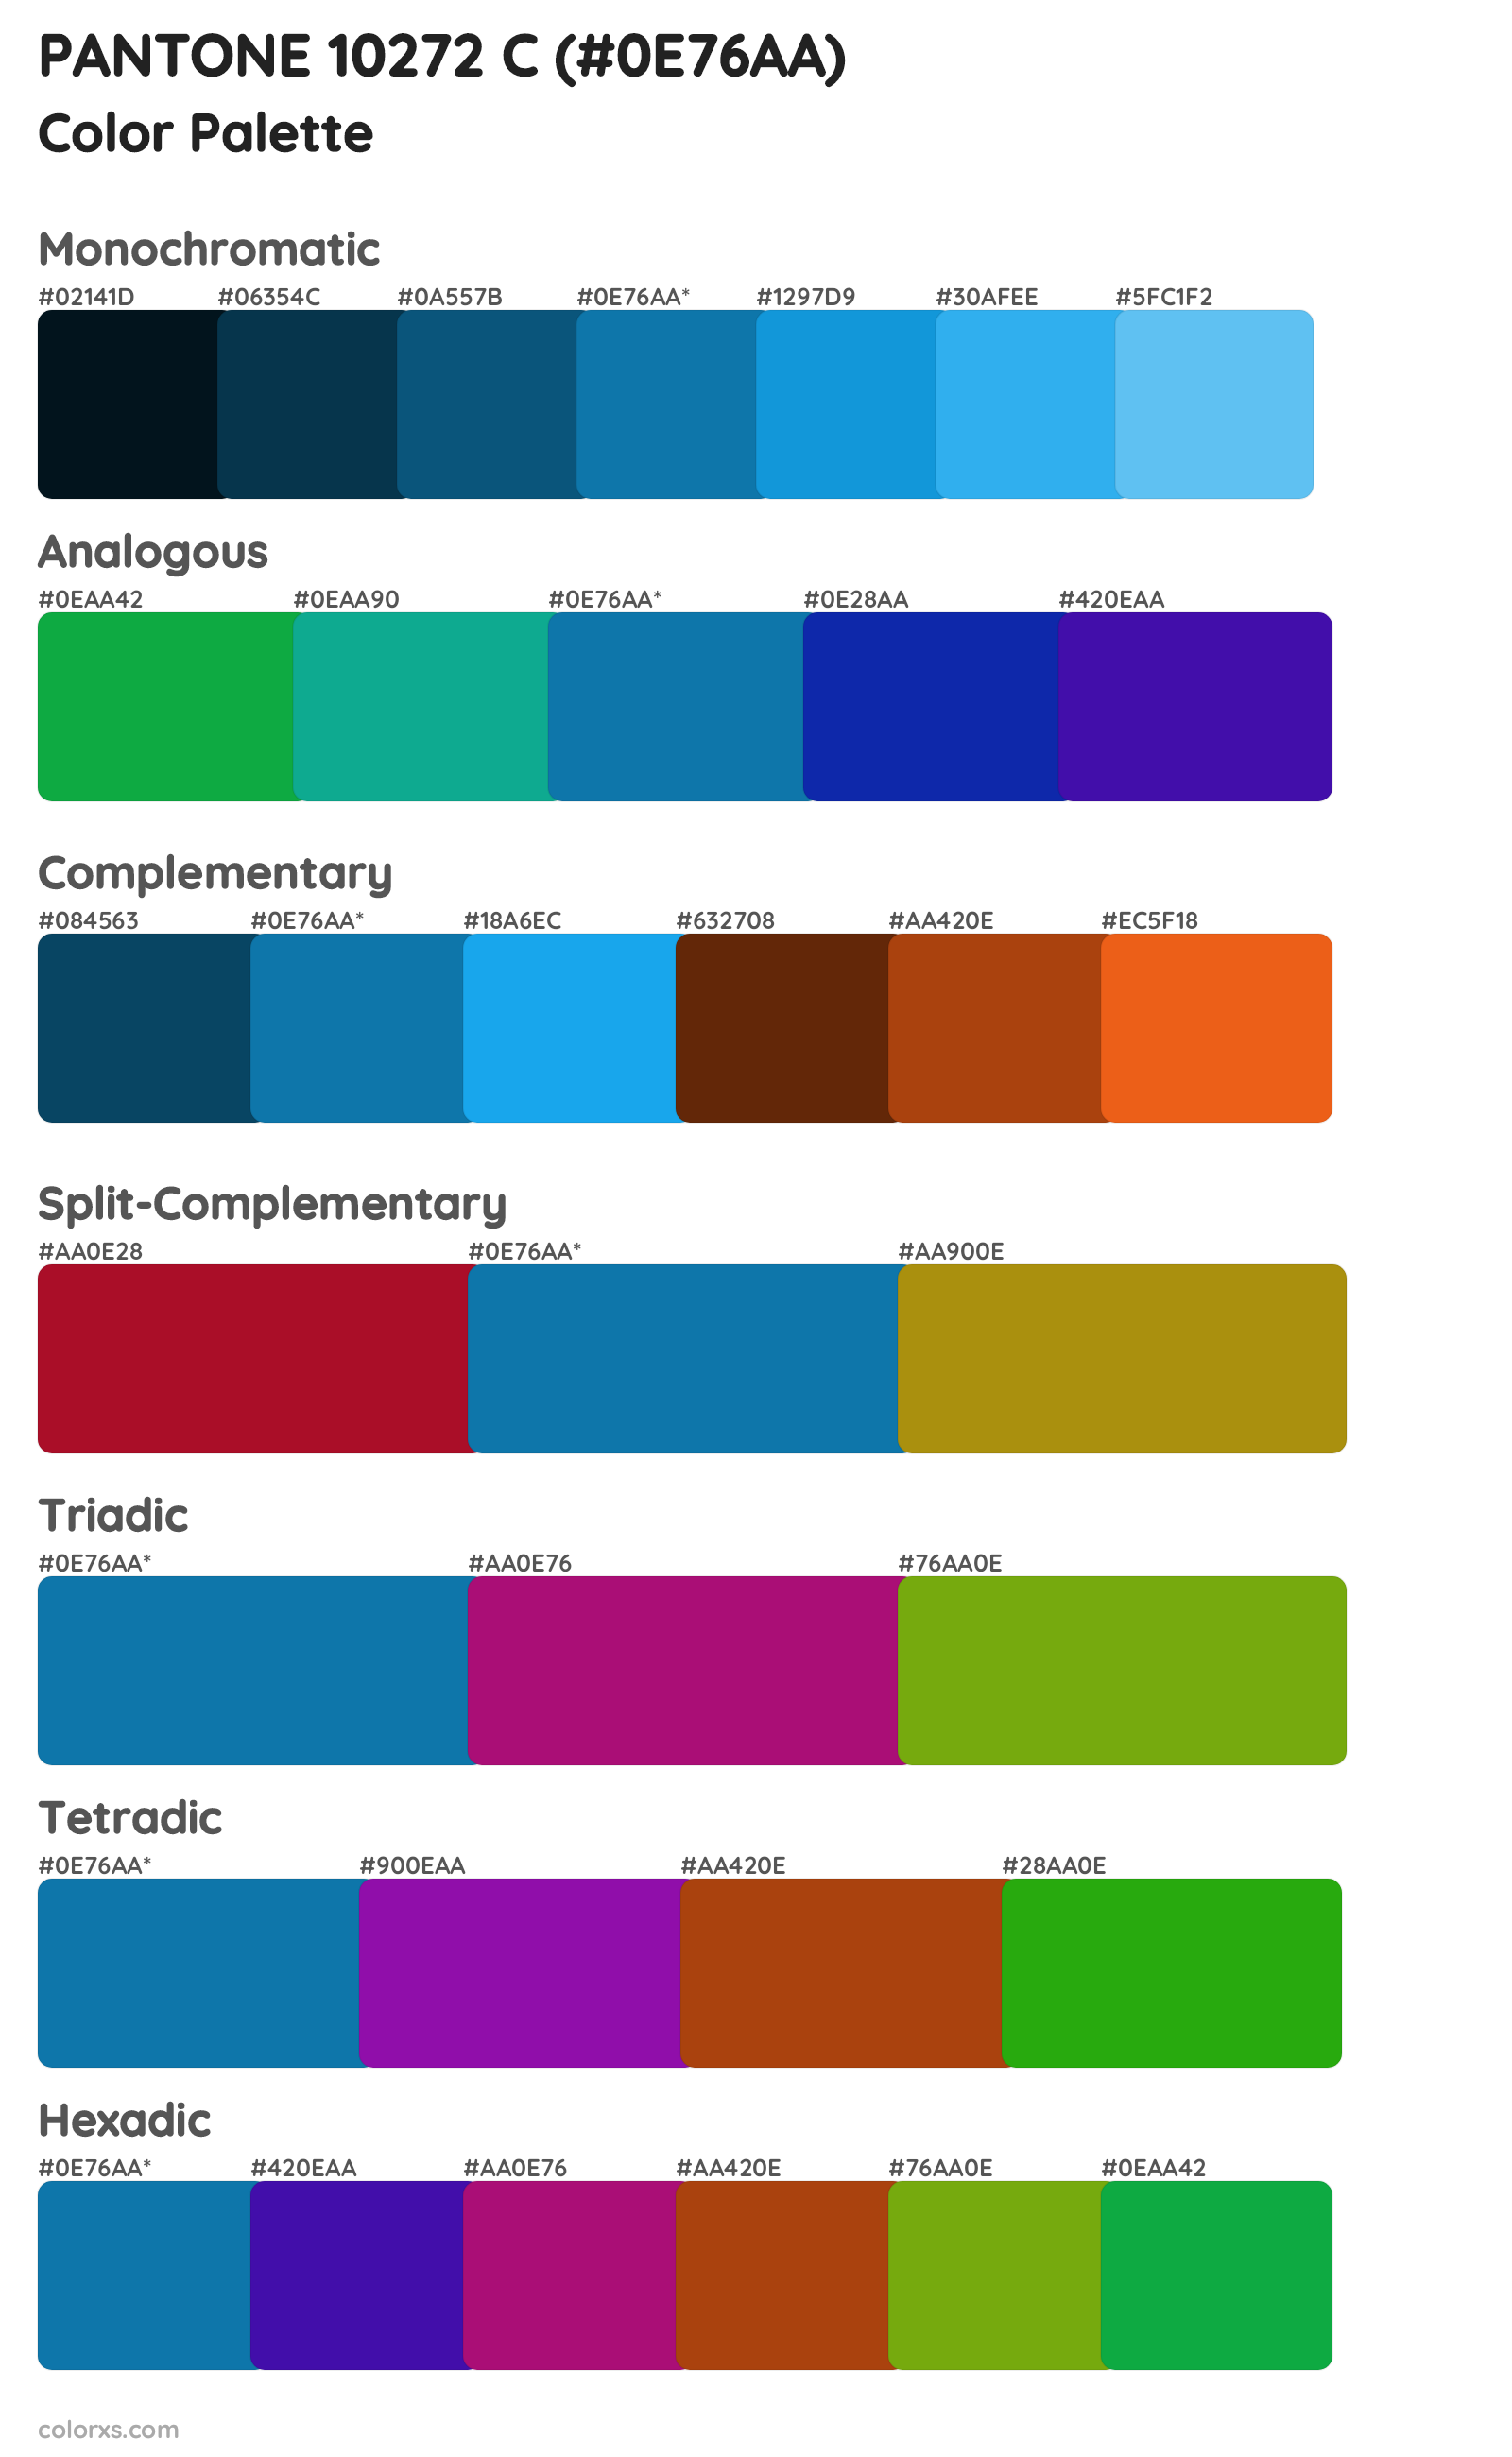 PANTONE 10272 C Color Scheme Palettes